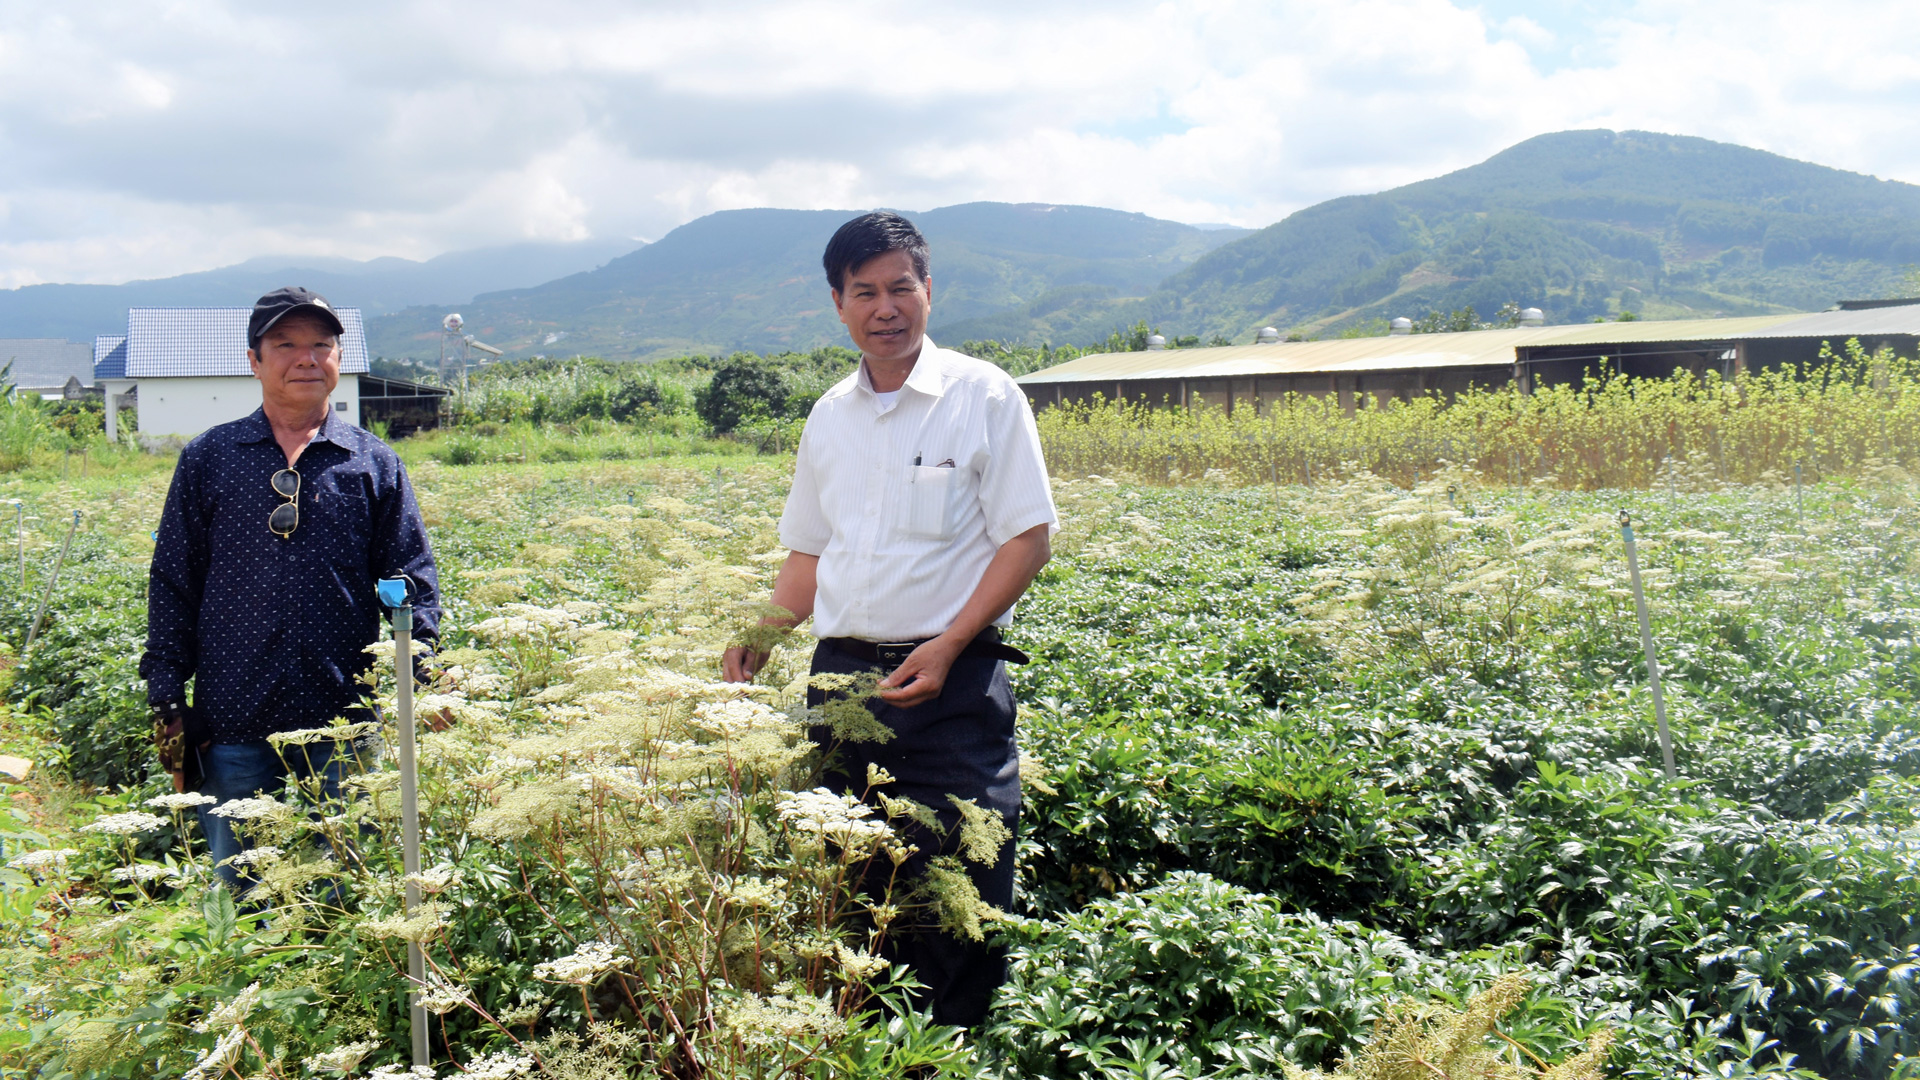 Vùng nguyên liệu thảo dược huyện Lâm Hà liên kết sản xuất của Công ty TNHH Đà Lạt thảo dược Minh Quân chiếm hơn 60% diện tích cây đương quy